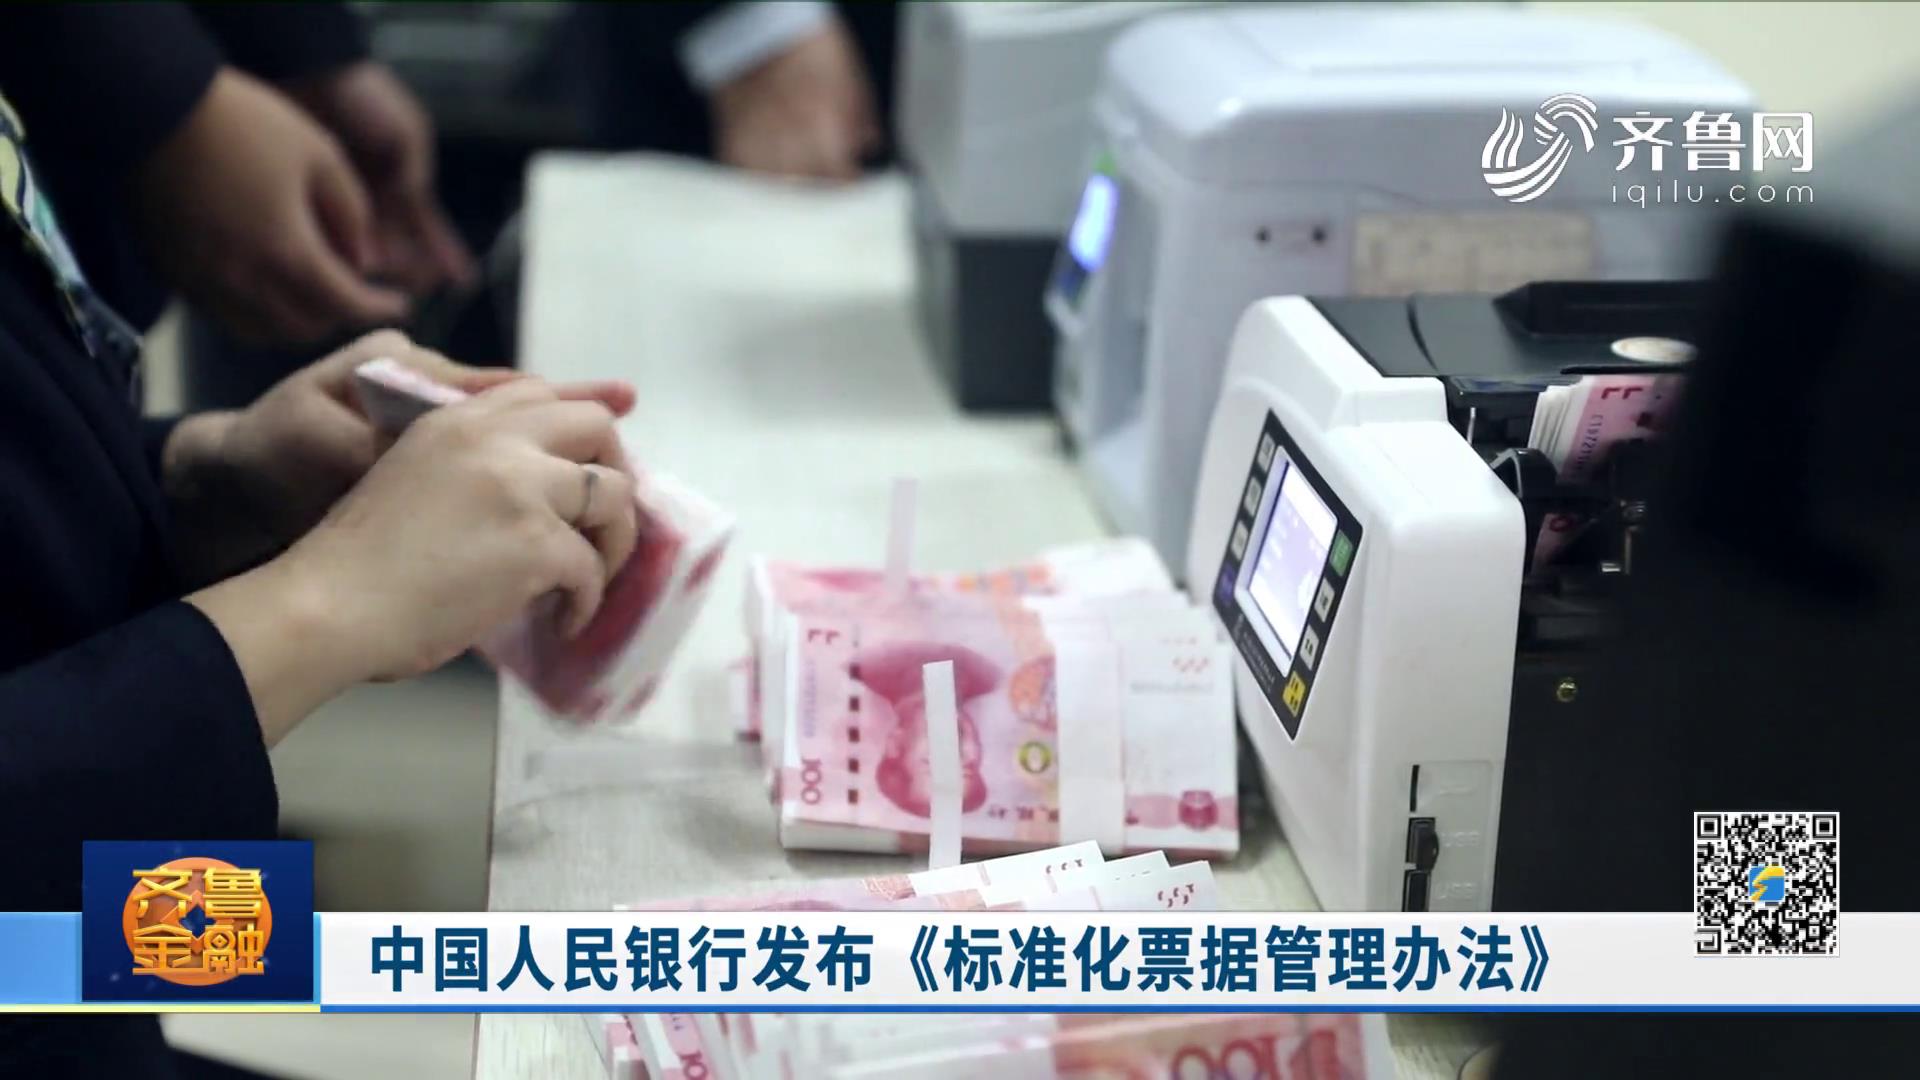 中国人民银行发布《标准化票据管理办法》《齐鲁金融》20200701播出